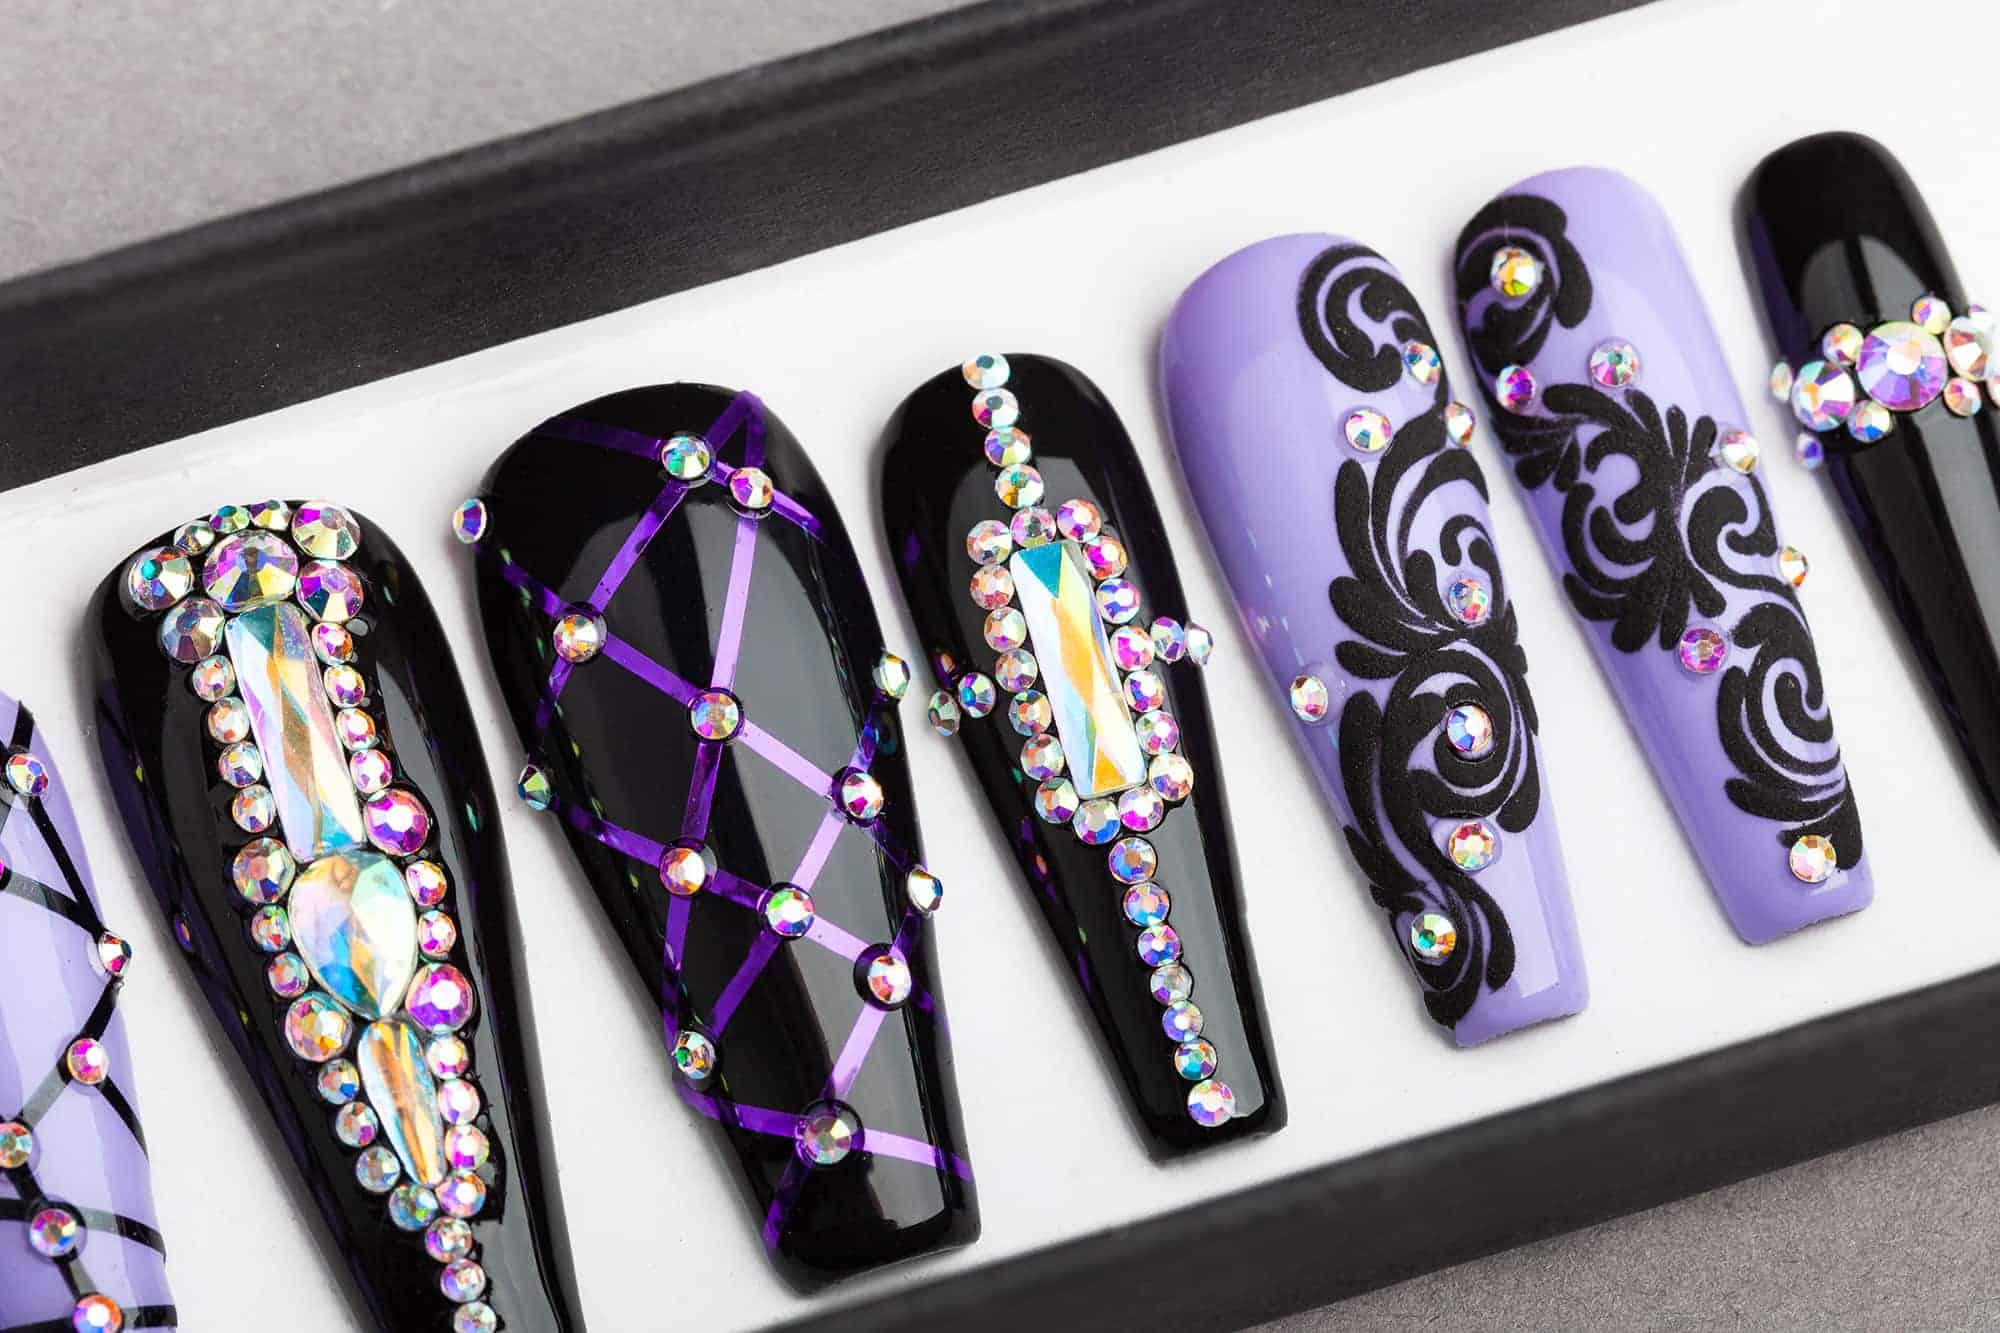 The Purple Royal Press on Nails with Swarovski Crystals | Halloween nails | Hand painted Nail Art | Fake Nails | False Nails | Glue on nails